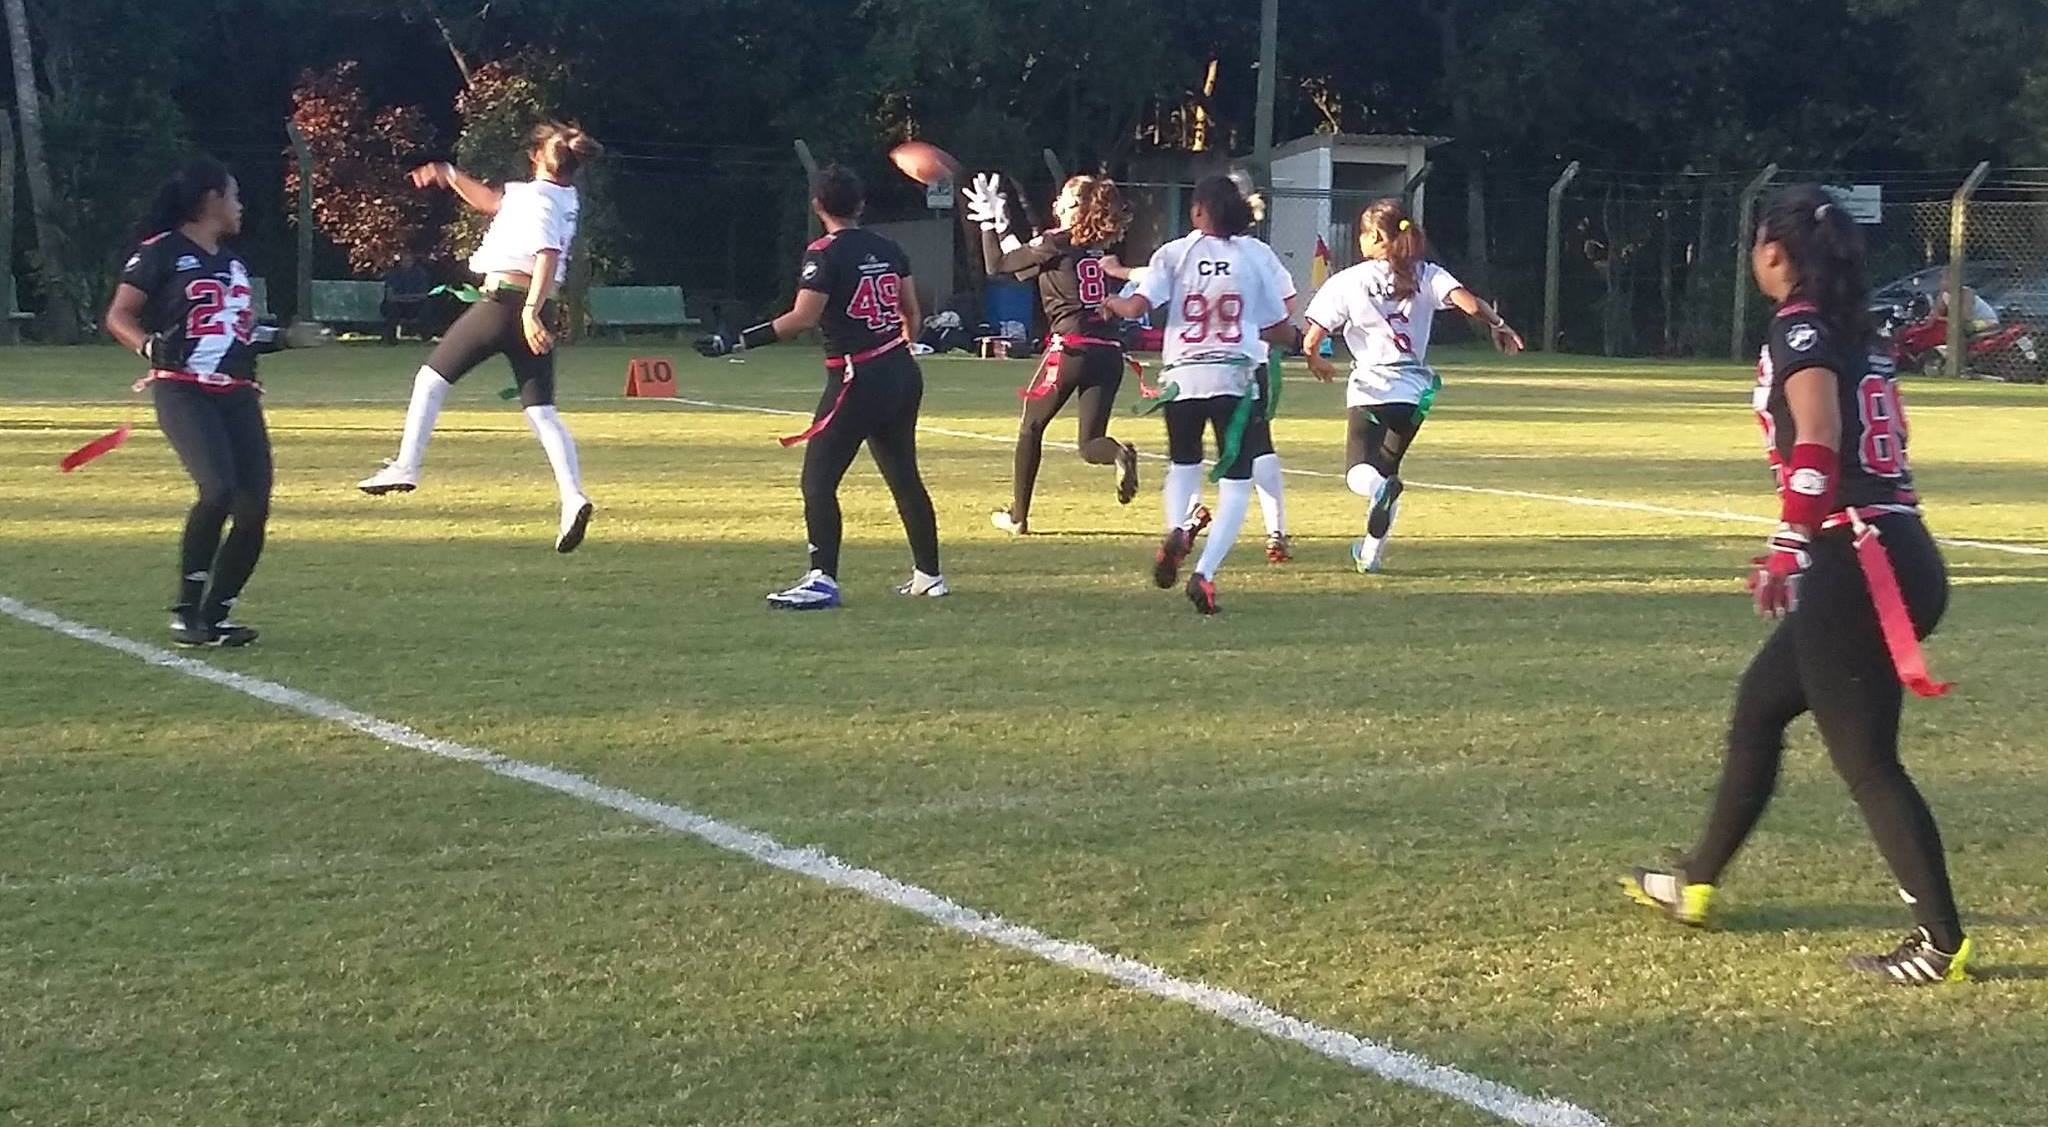 Futebol Americano Feminino: Vascaínas comentam estreia no Brasileiro neste  domingo - NETVASCO